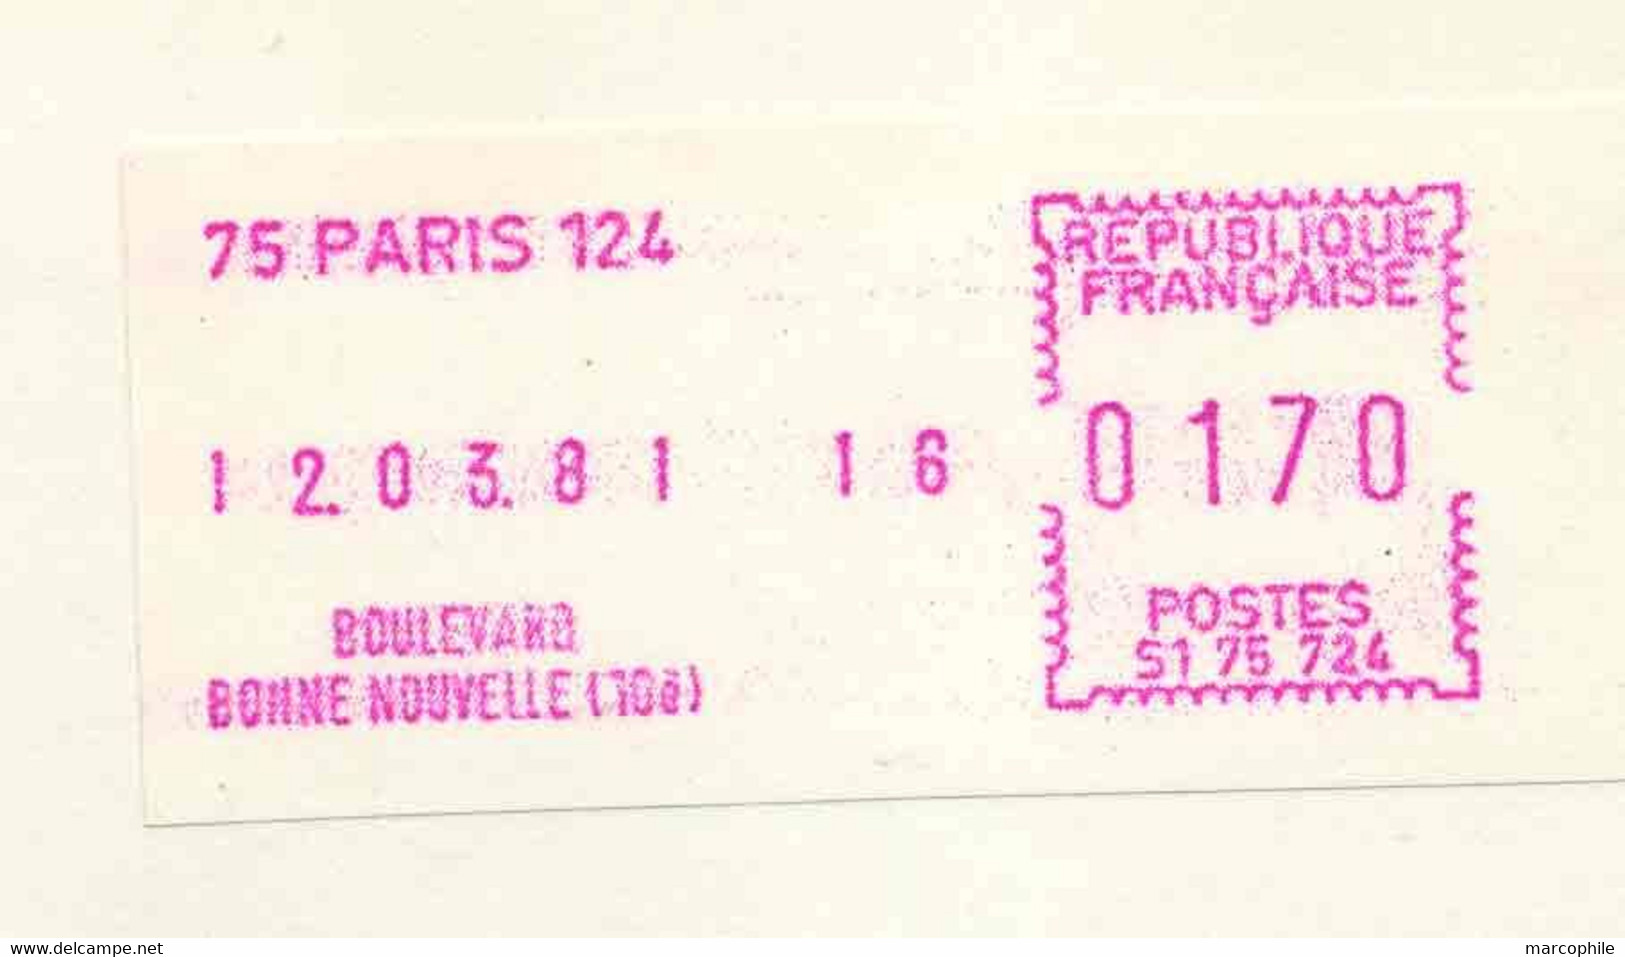 TIMBRE DE DISTRIBUTEUR - 75 PARIS 124 - BD BONNE NOUVELLE / 1981 ENVELOPPE FDC POUR LA SUISSE(ref 9119k) - 1981-84 Types « LS » & « LSA » (prototypes)